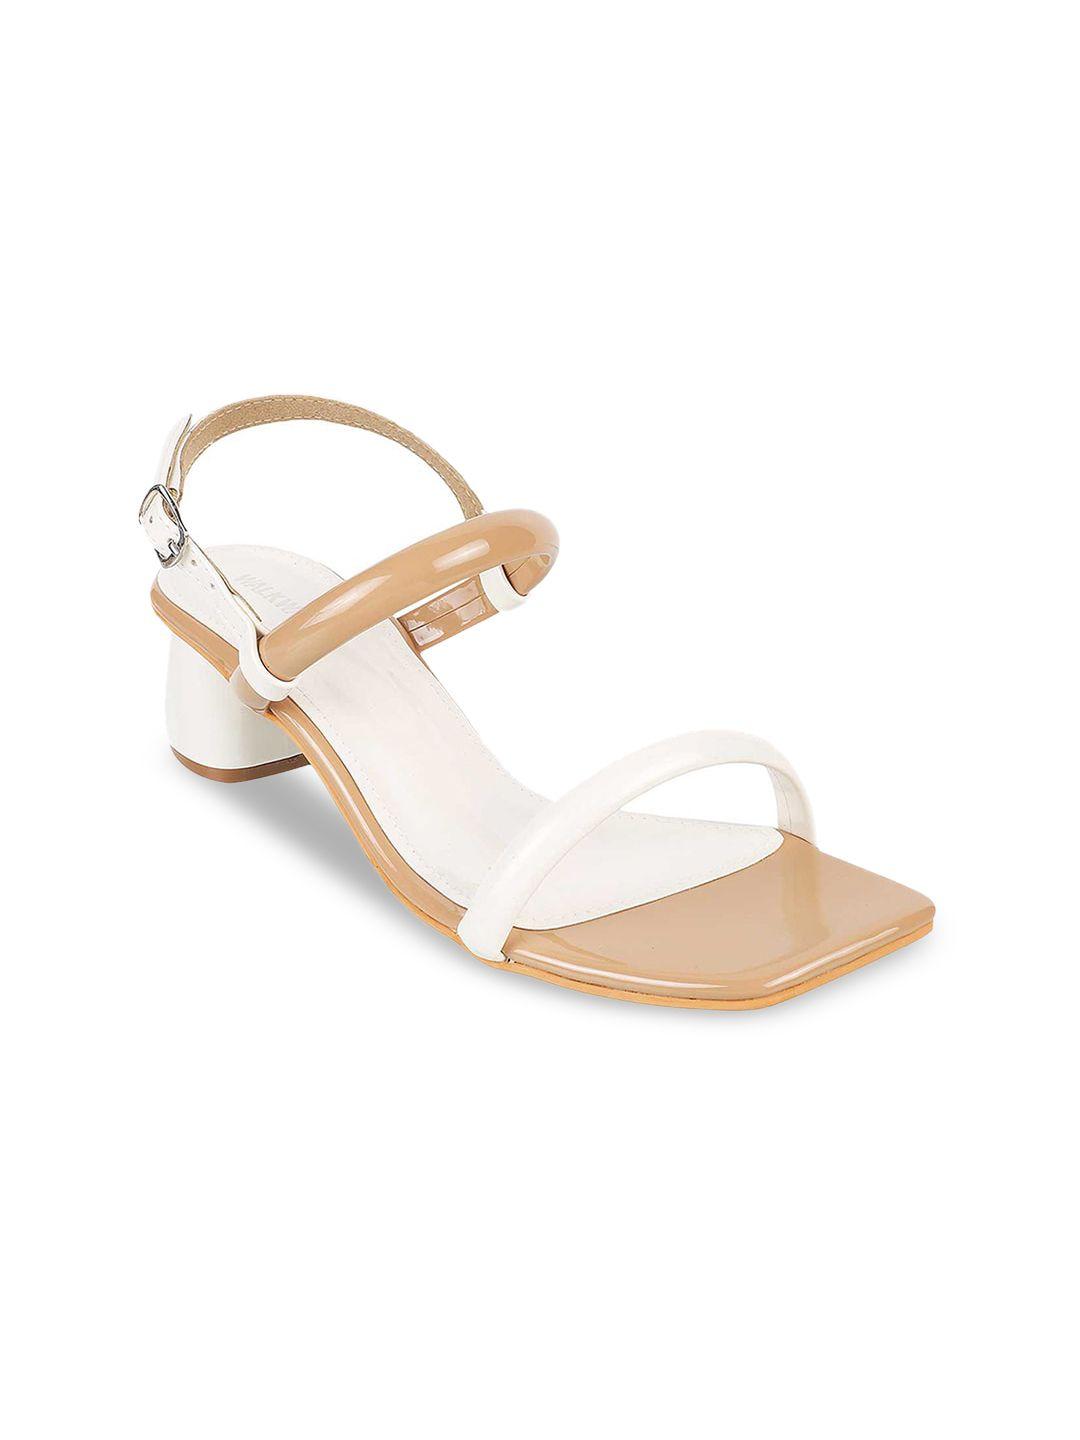 walkway by metro women white & beige block heels sandals with buckles